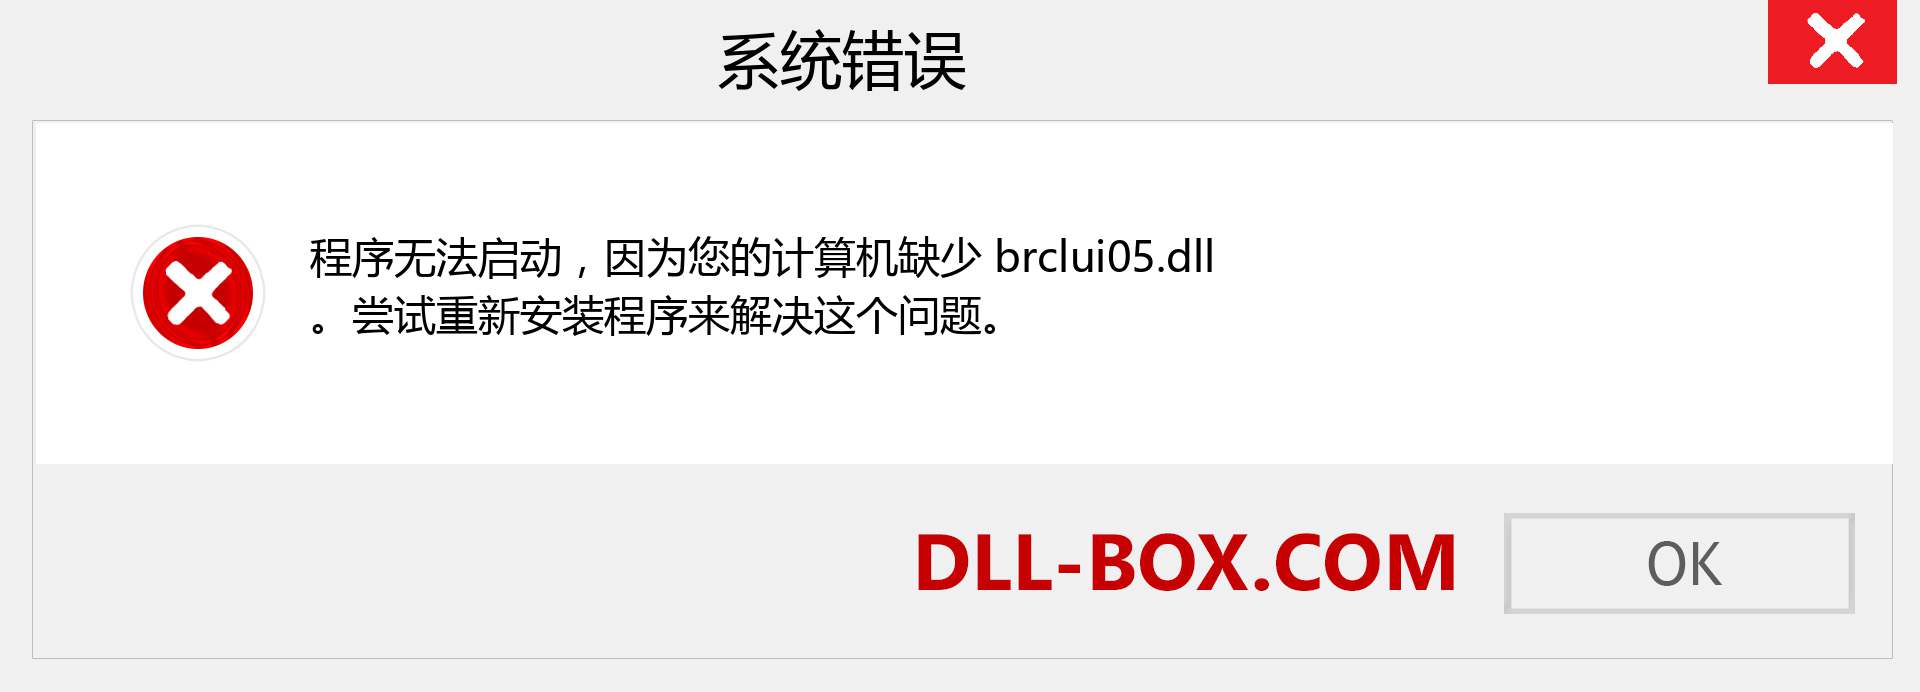 brclui05.dll 文件丢失？。 适用于 Windows 7、8、10 的下载 - 修复 Windows、照片、图像上的 brclui05 dll 丢失错误